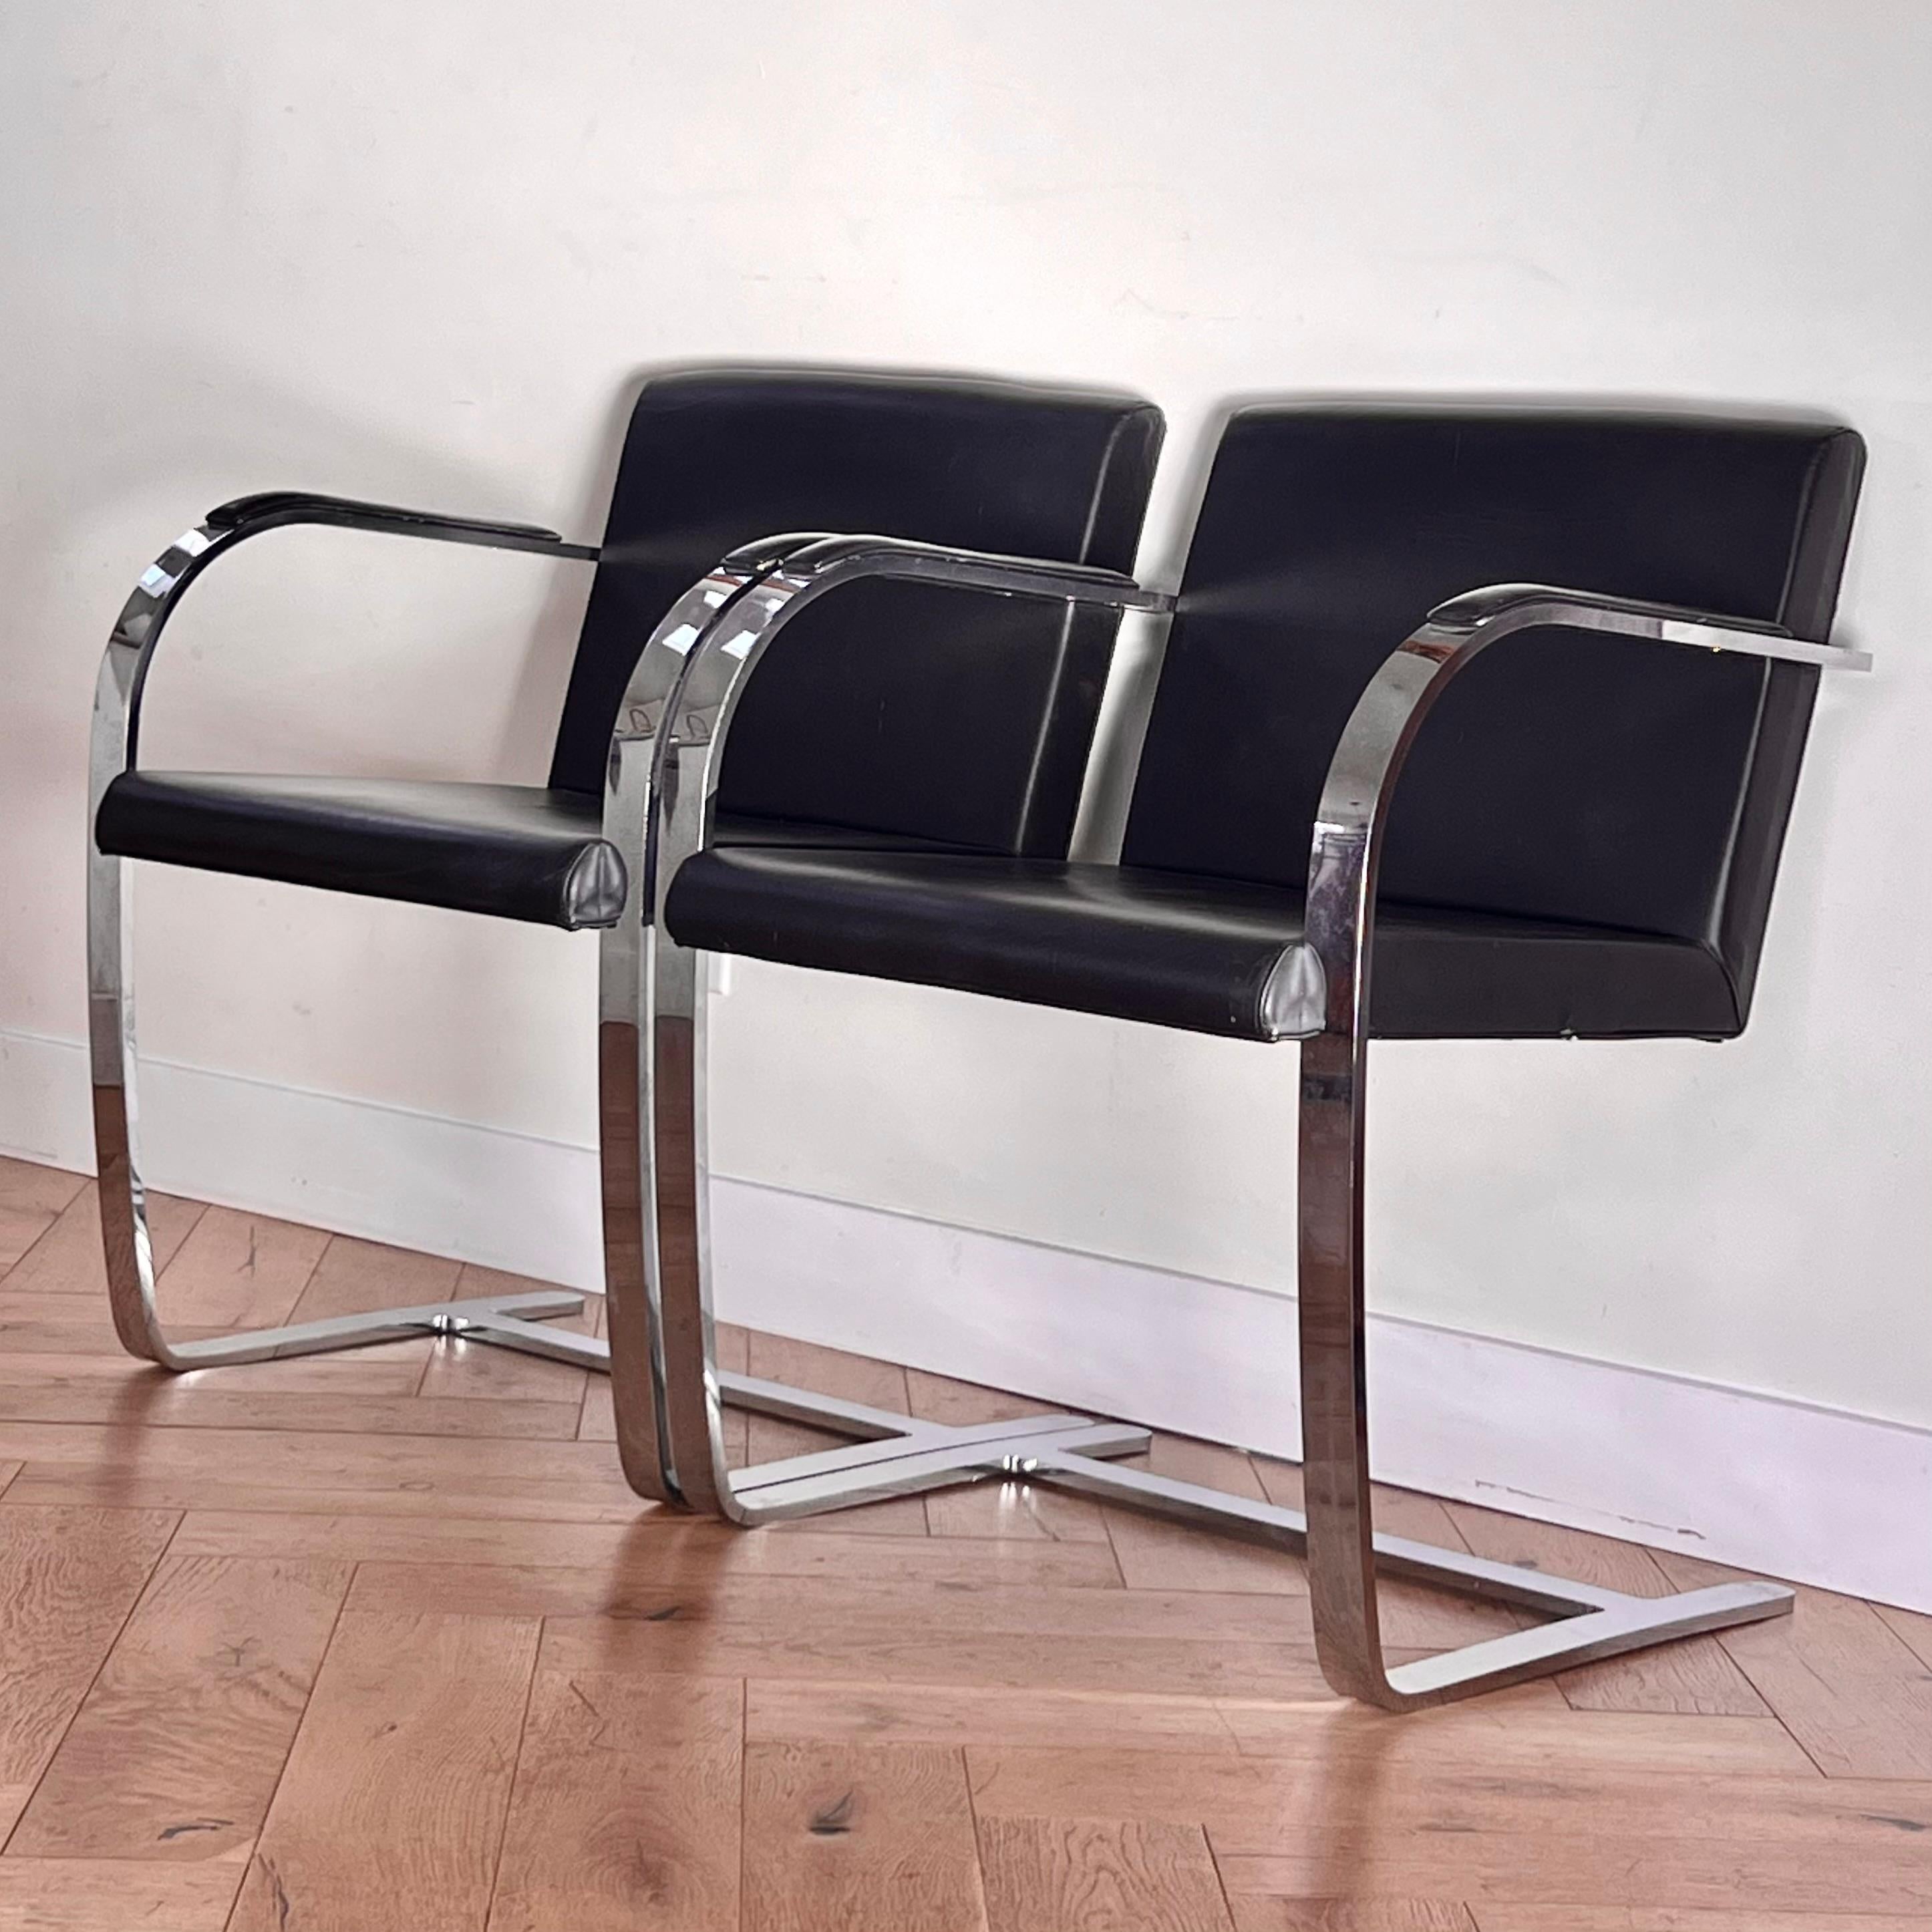 Ein Paar flache Sessel aus Brünn mit Chrom und schwarzem Leder, um 1970. Diese 1930 von Mies van der Rohe entworfenen Möbel sind autorisierte Reproduktionen, die von Palazzetti Italien nach den Originalvorgaben hergestellt wurden. Einige